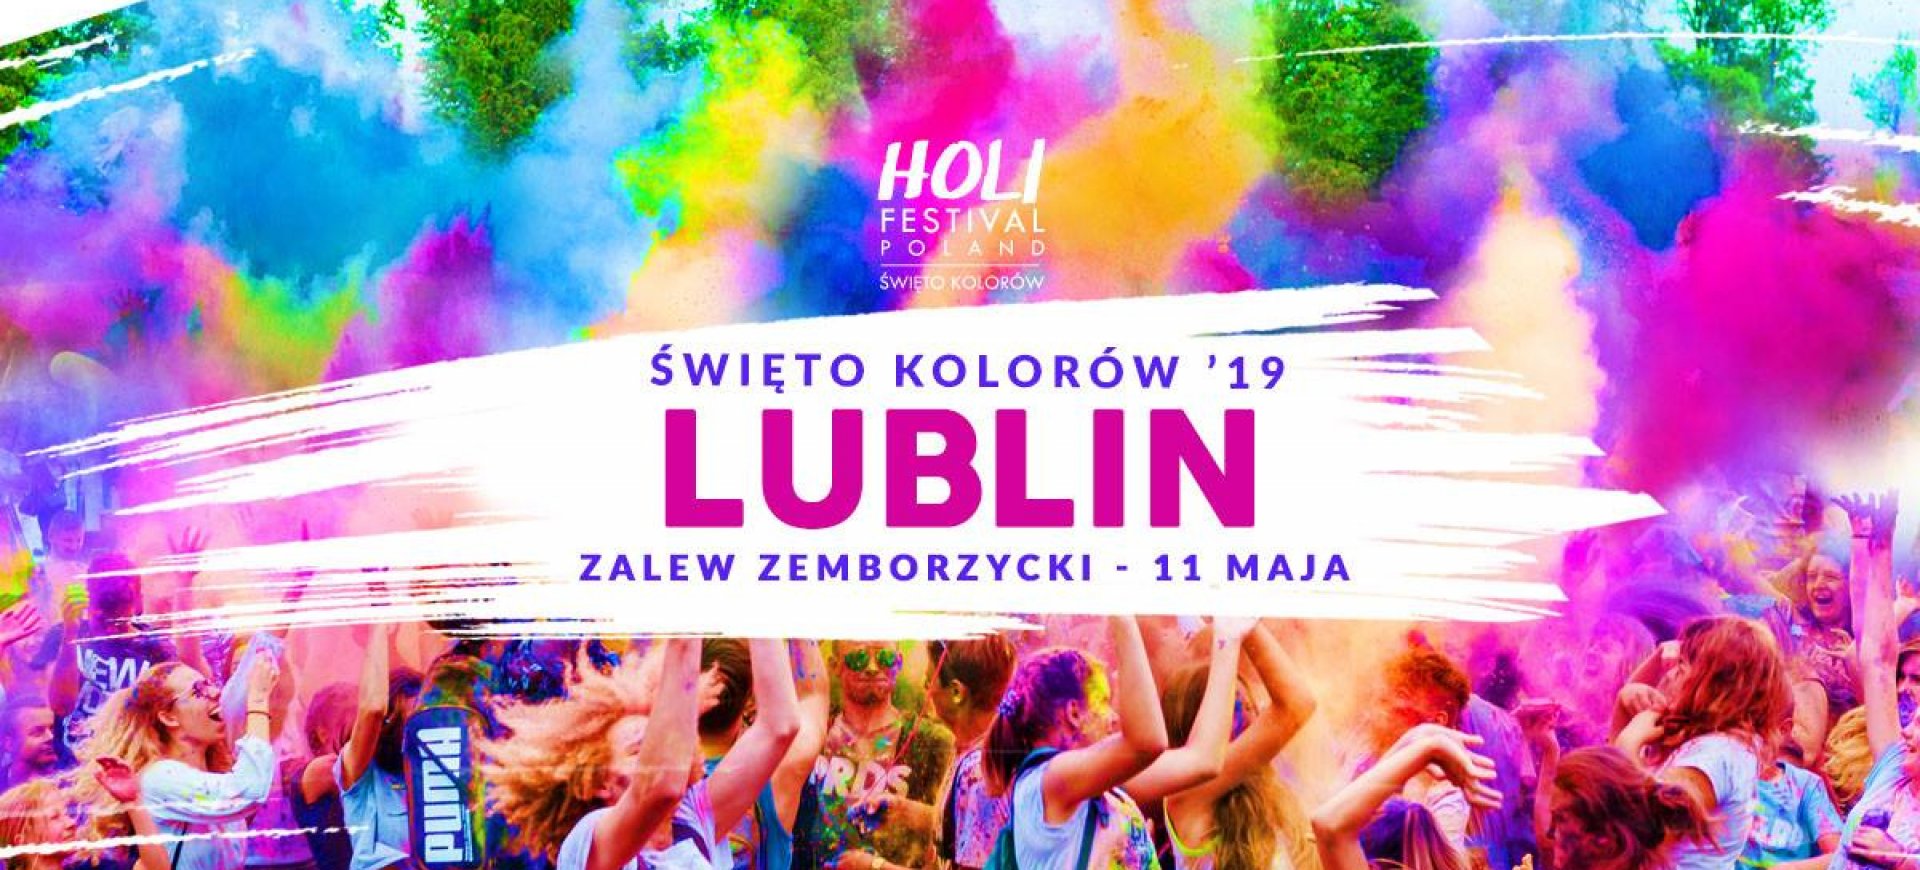 Holi Festival - Święto Kolorów w Lublinie